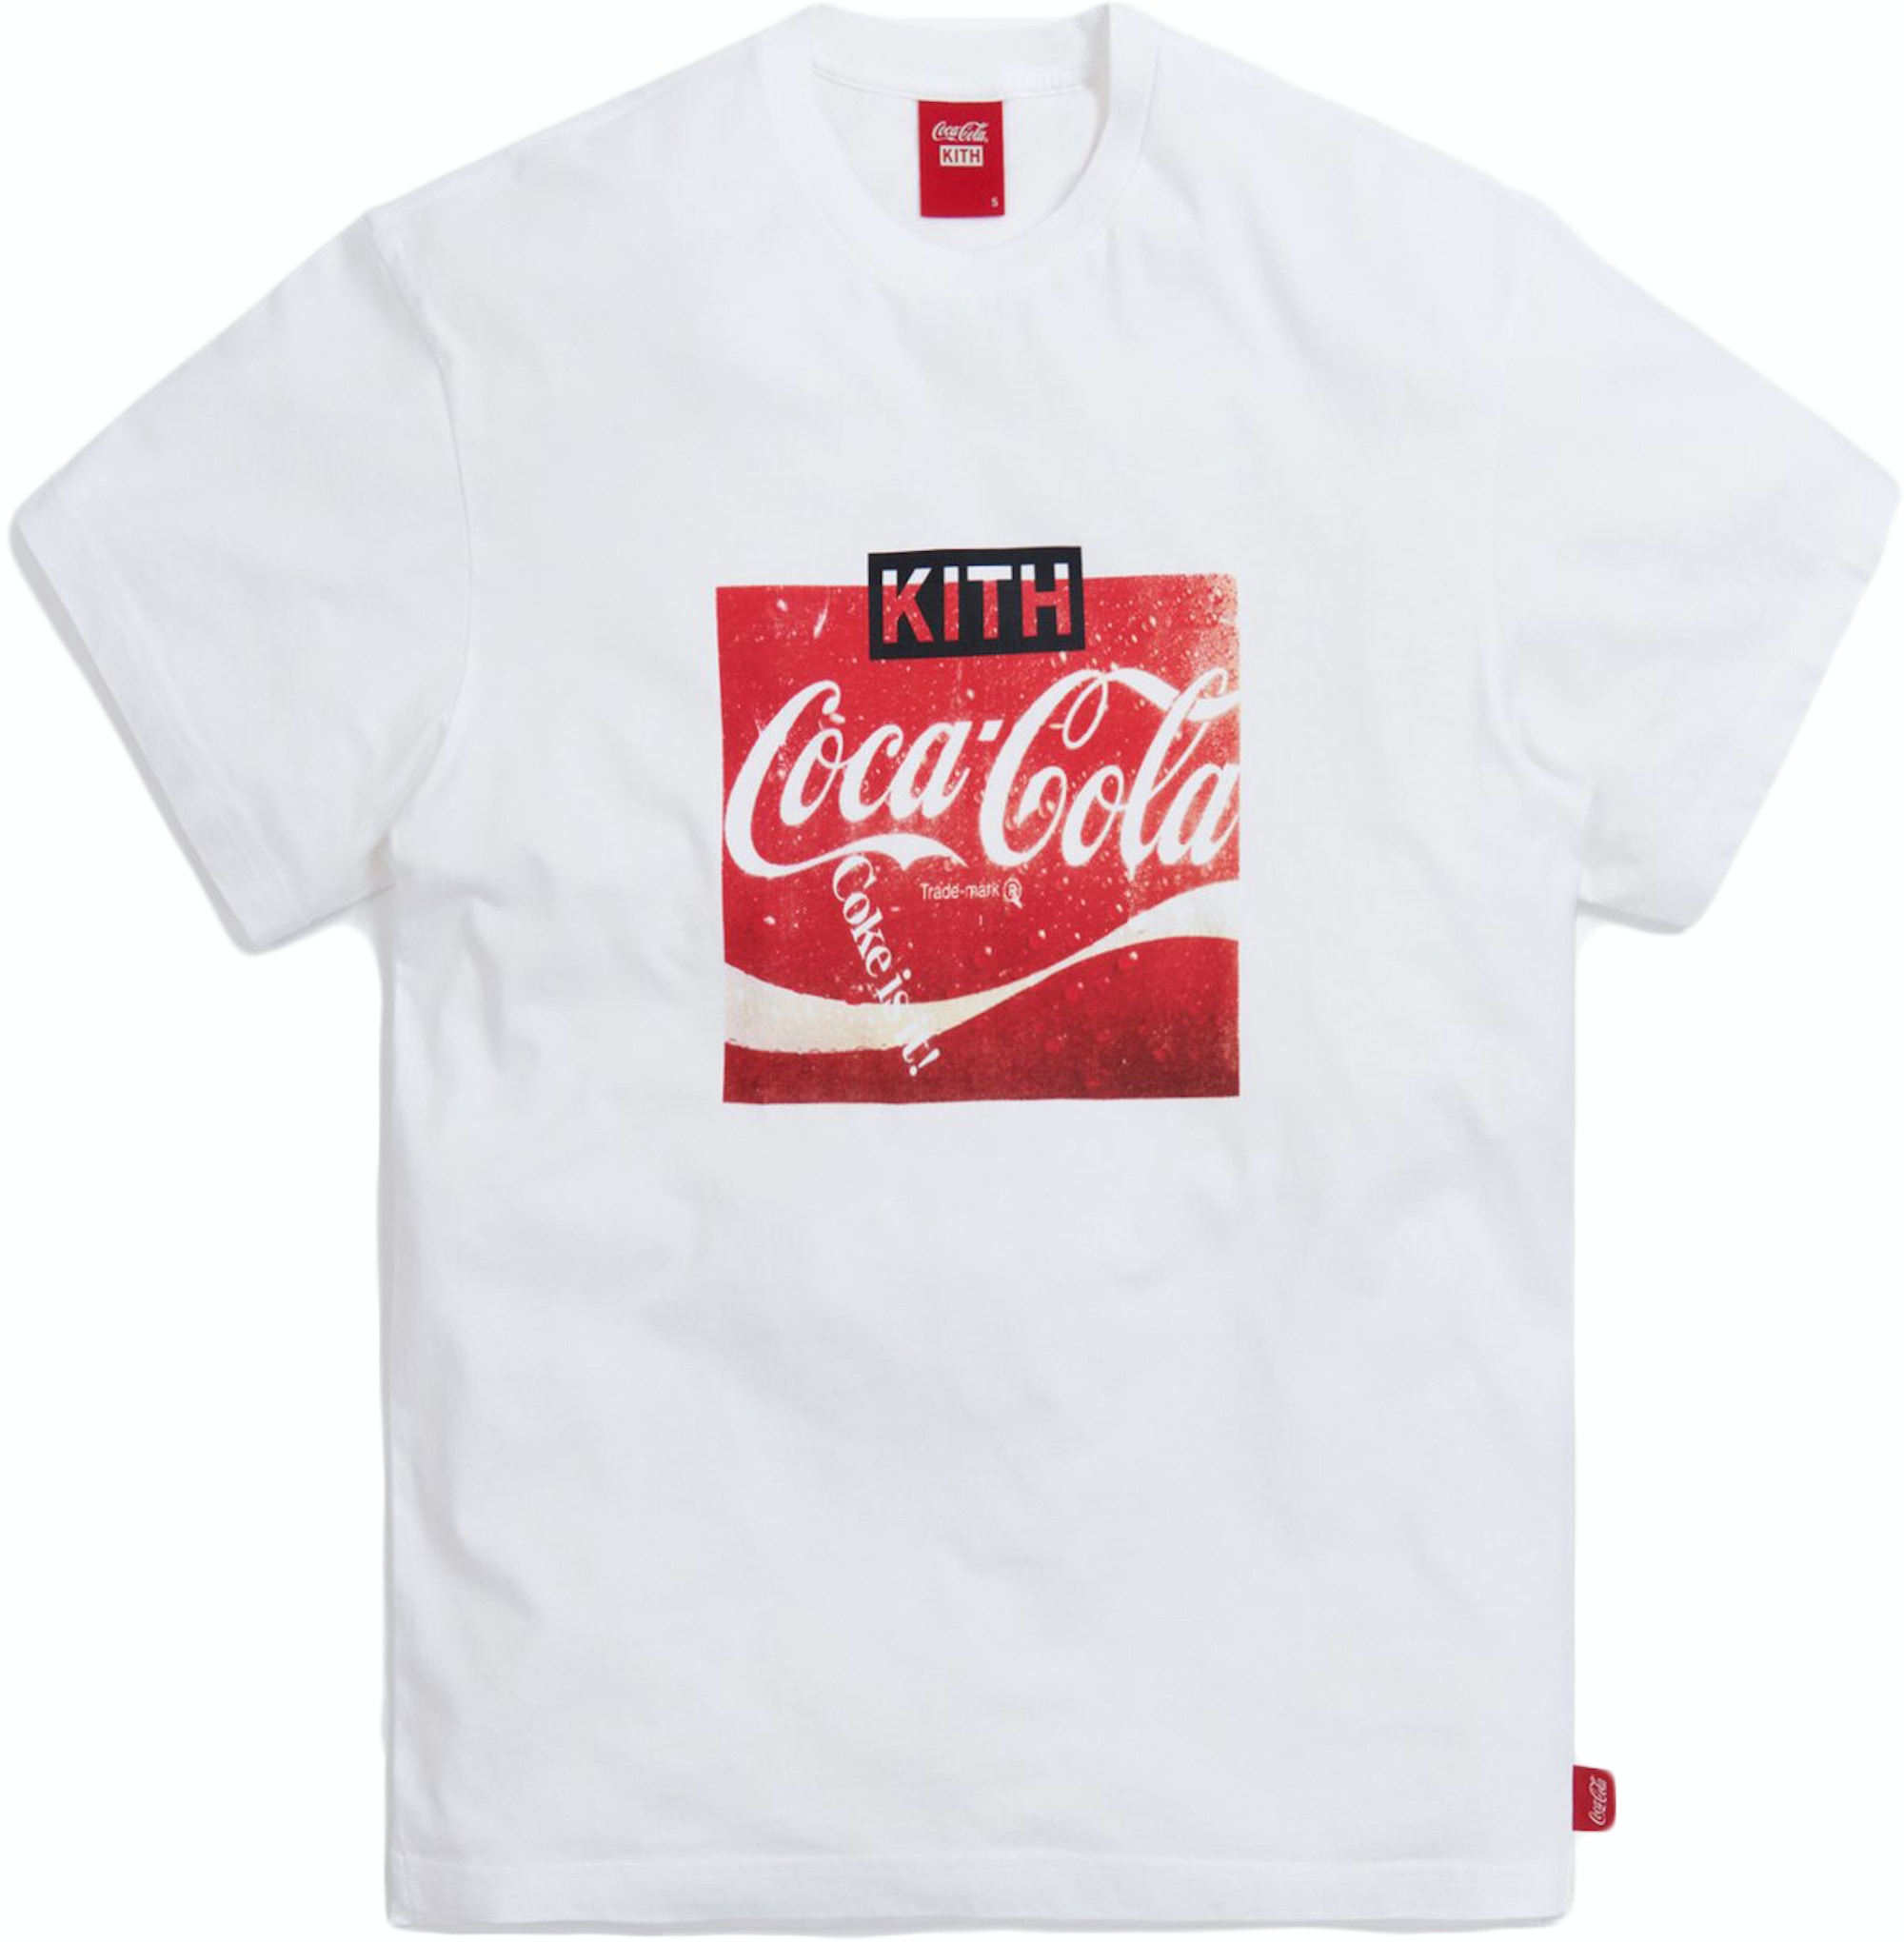 Kith x Coca-Cola Vintage Tee White - SS20